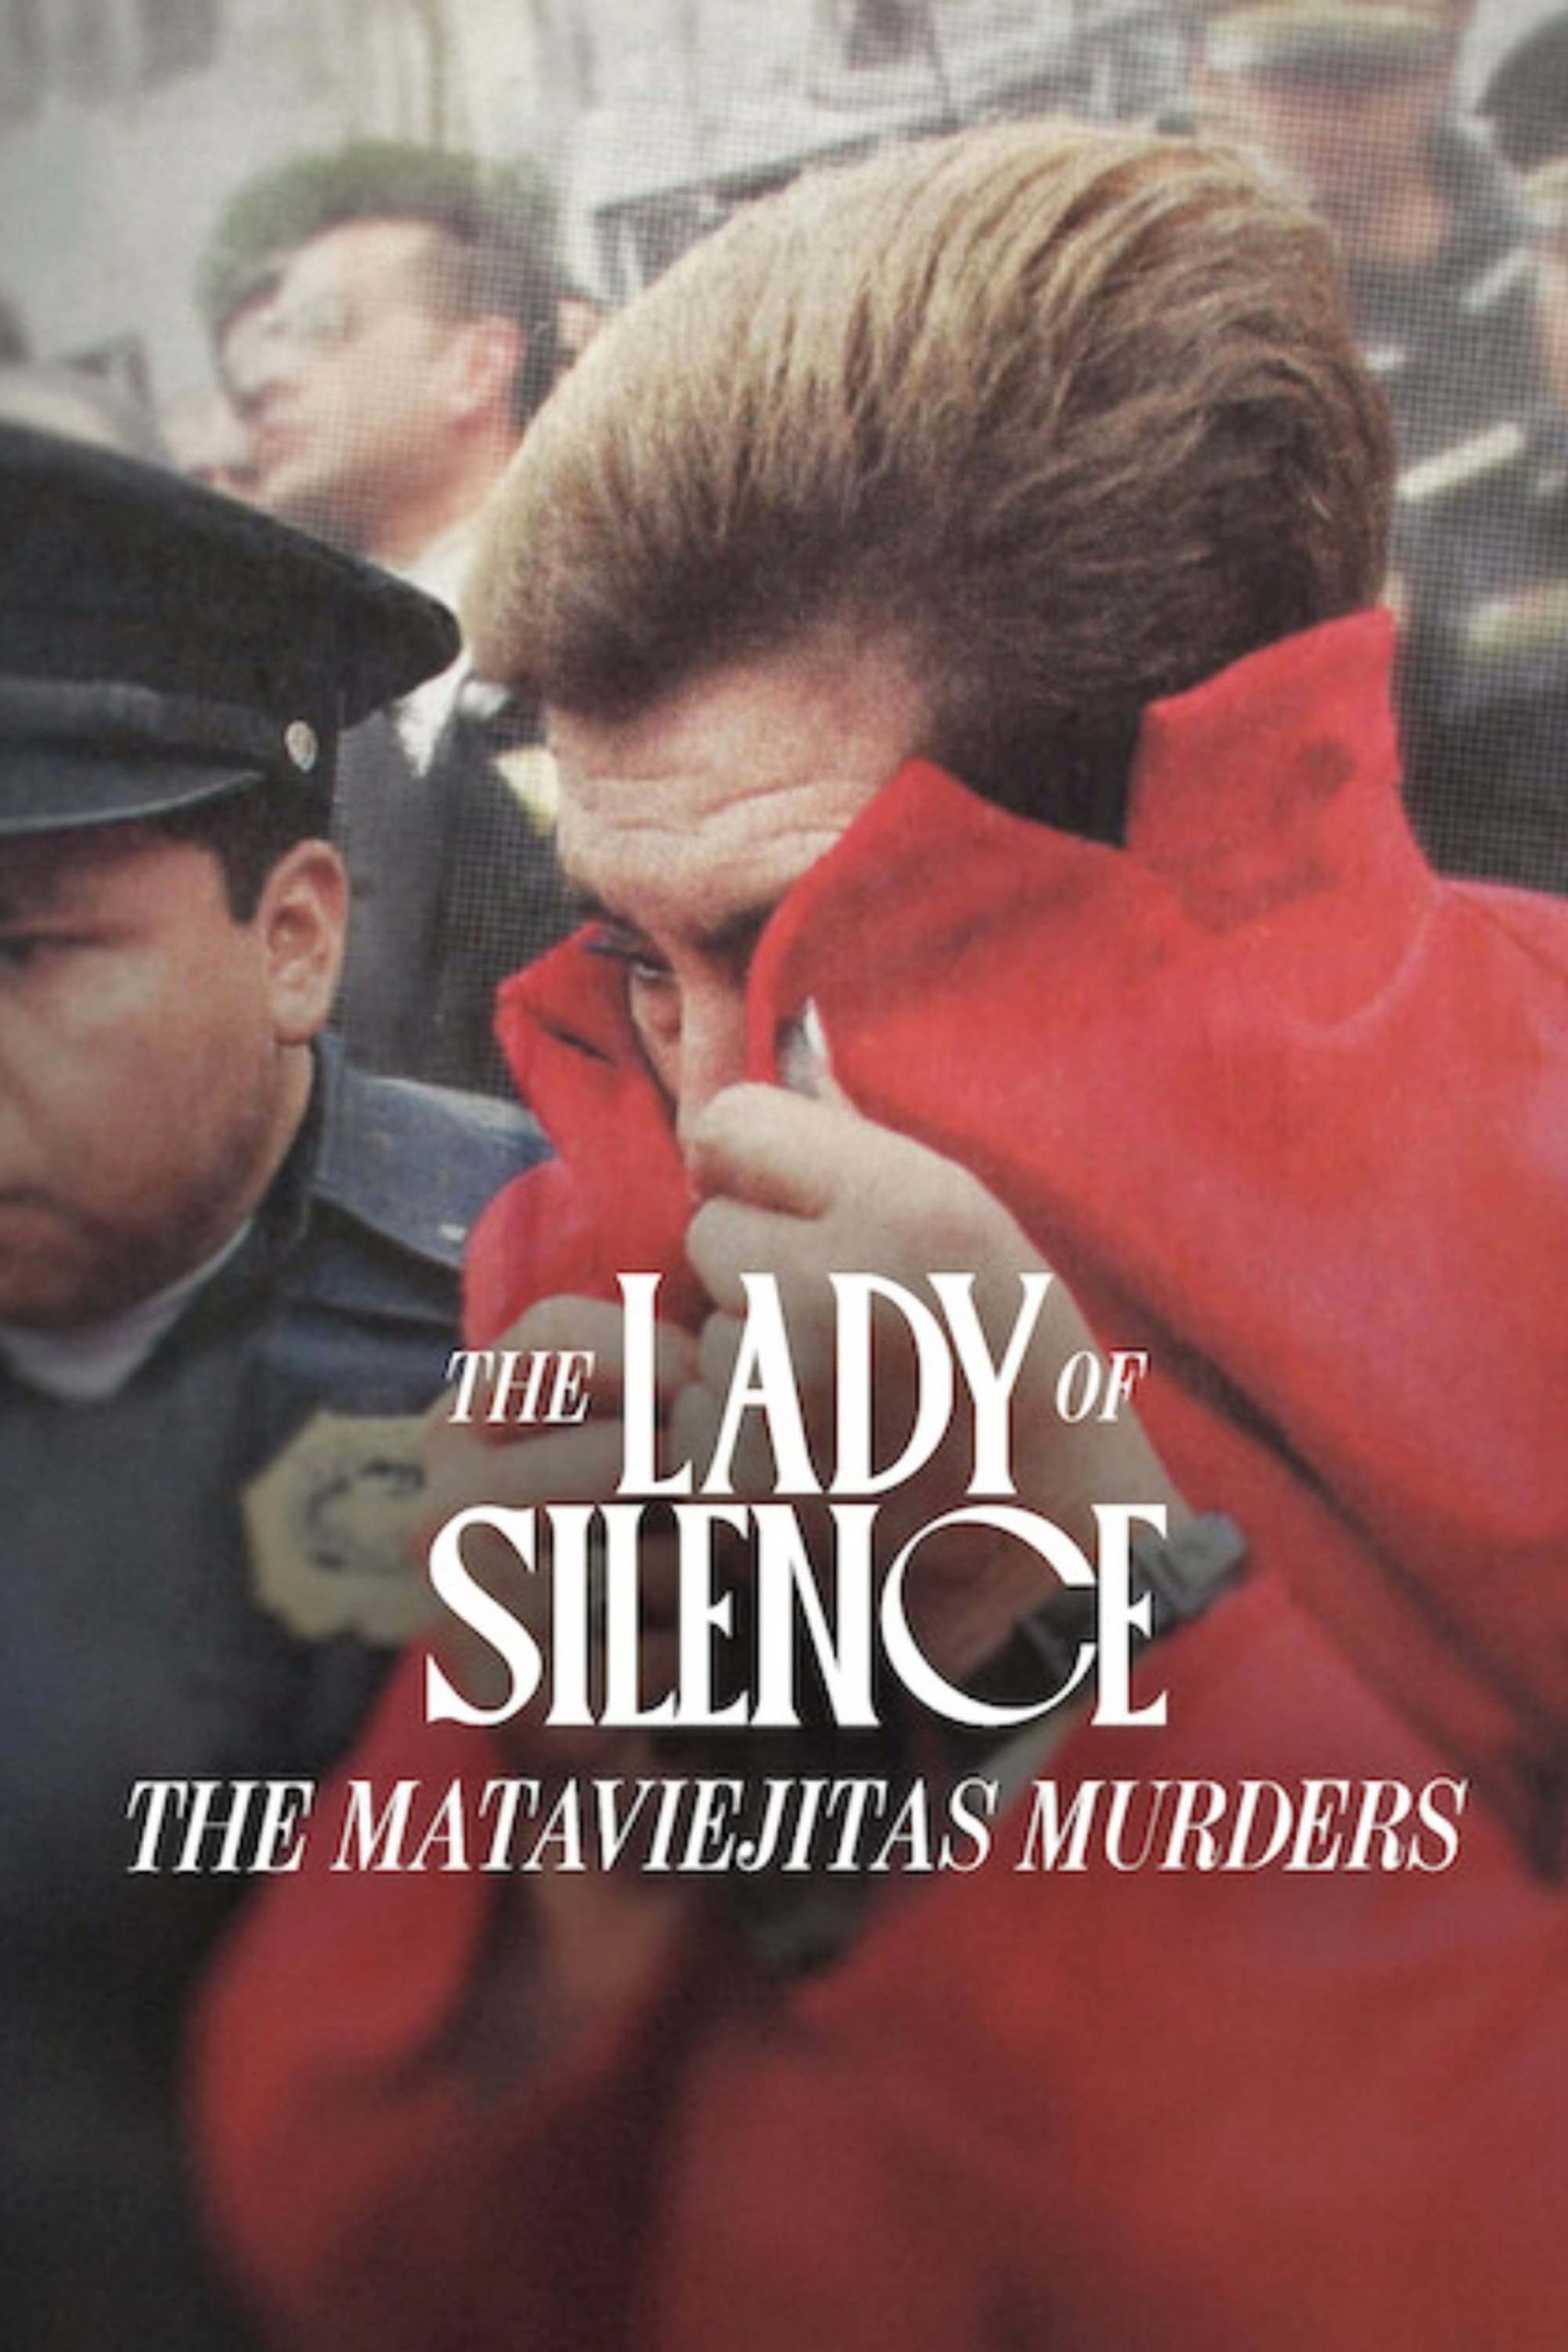 بانوی سکوت: قتل های ماتاوی ایهیتاس (The Lady of Silence: The Mataviejitas Murders)